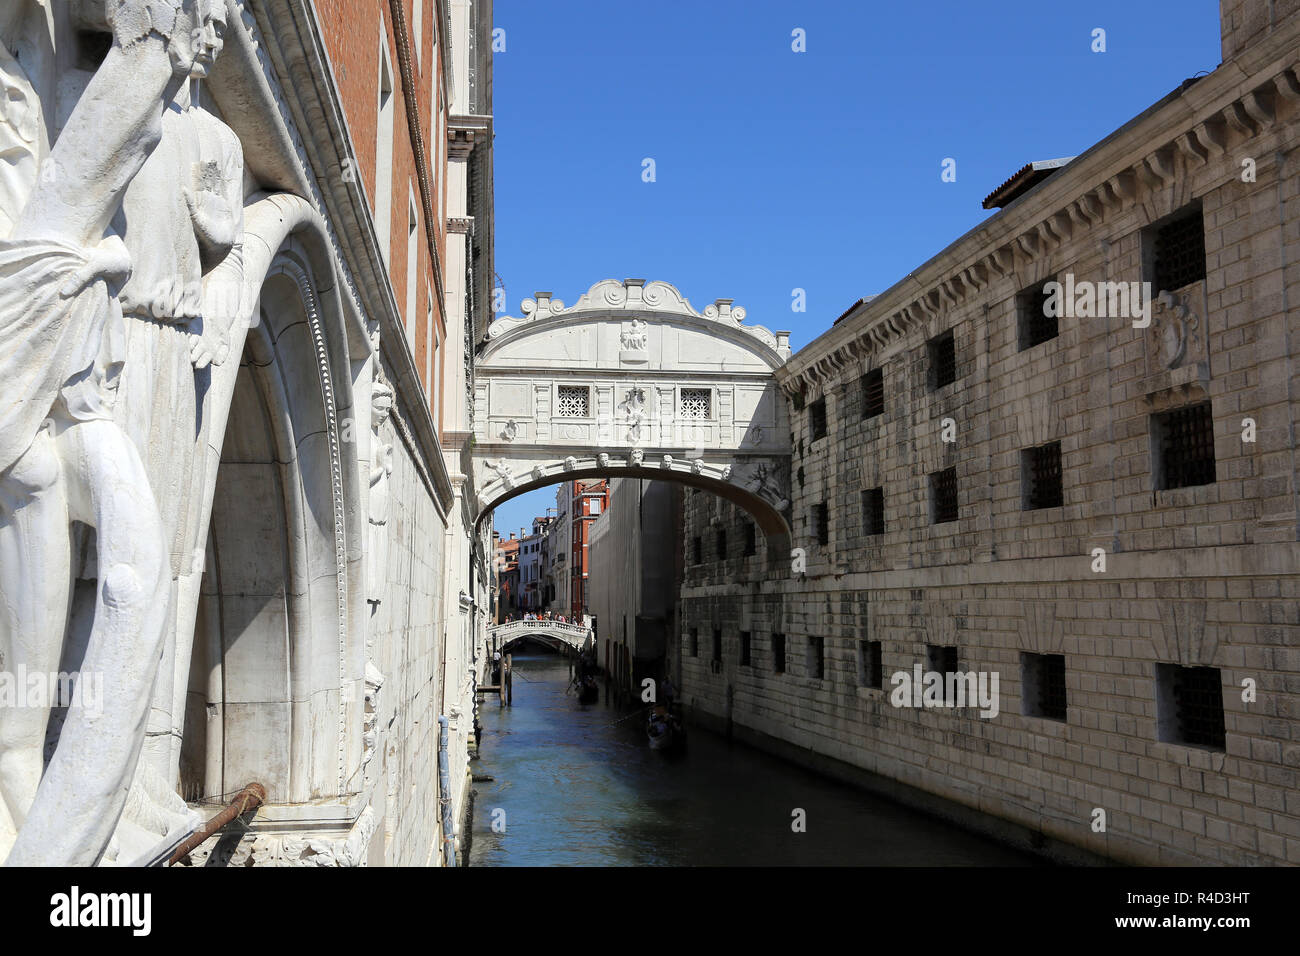 Italia. Venecia. Puente de los Suspiros. Siglo xvii. De estilo barroco. Por Antonio Cortino. La región del Veneto. Foto de stock